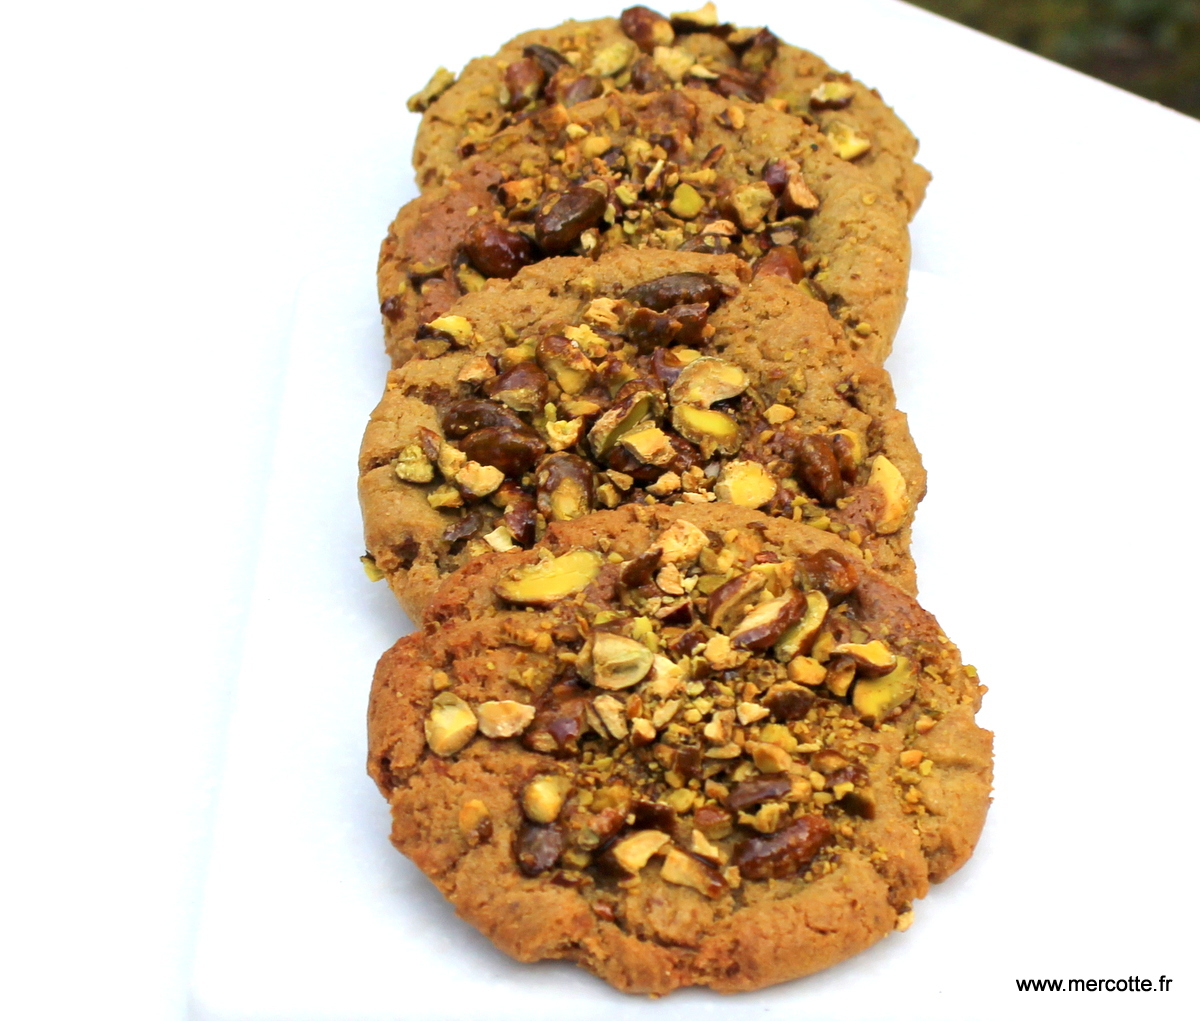 Recette de Cookies noix de pécan caramel par Cédric Grolet